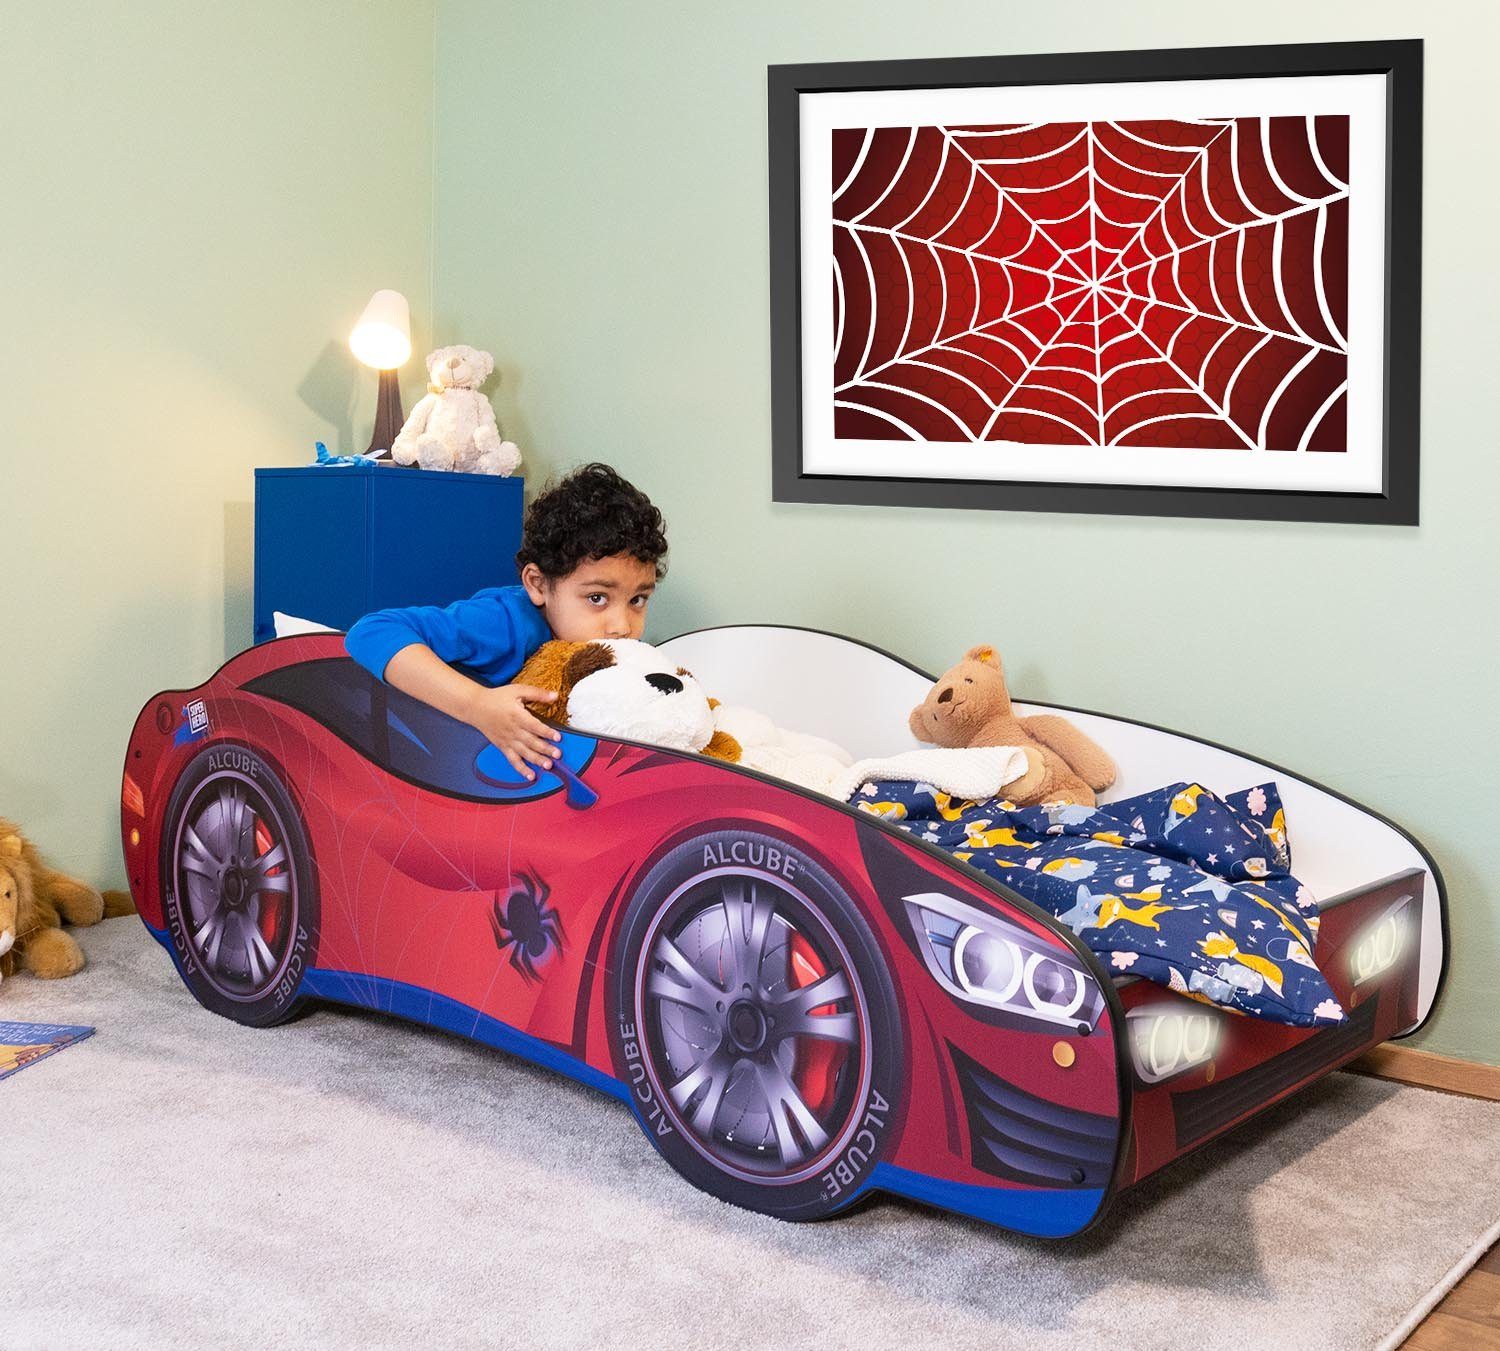 Alcube Autobett Racer I BESTSELLER! GRATIS Lieferung (Komplett-Set Bett mit Matratze und Lattenrost), Kinderbett 70x140 cm PKW Spider Car mit LED, Autobett 70x140 cm Rot - Pkw Spider Car mit Led